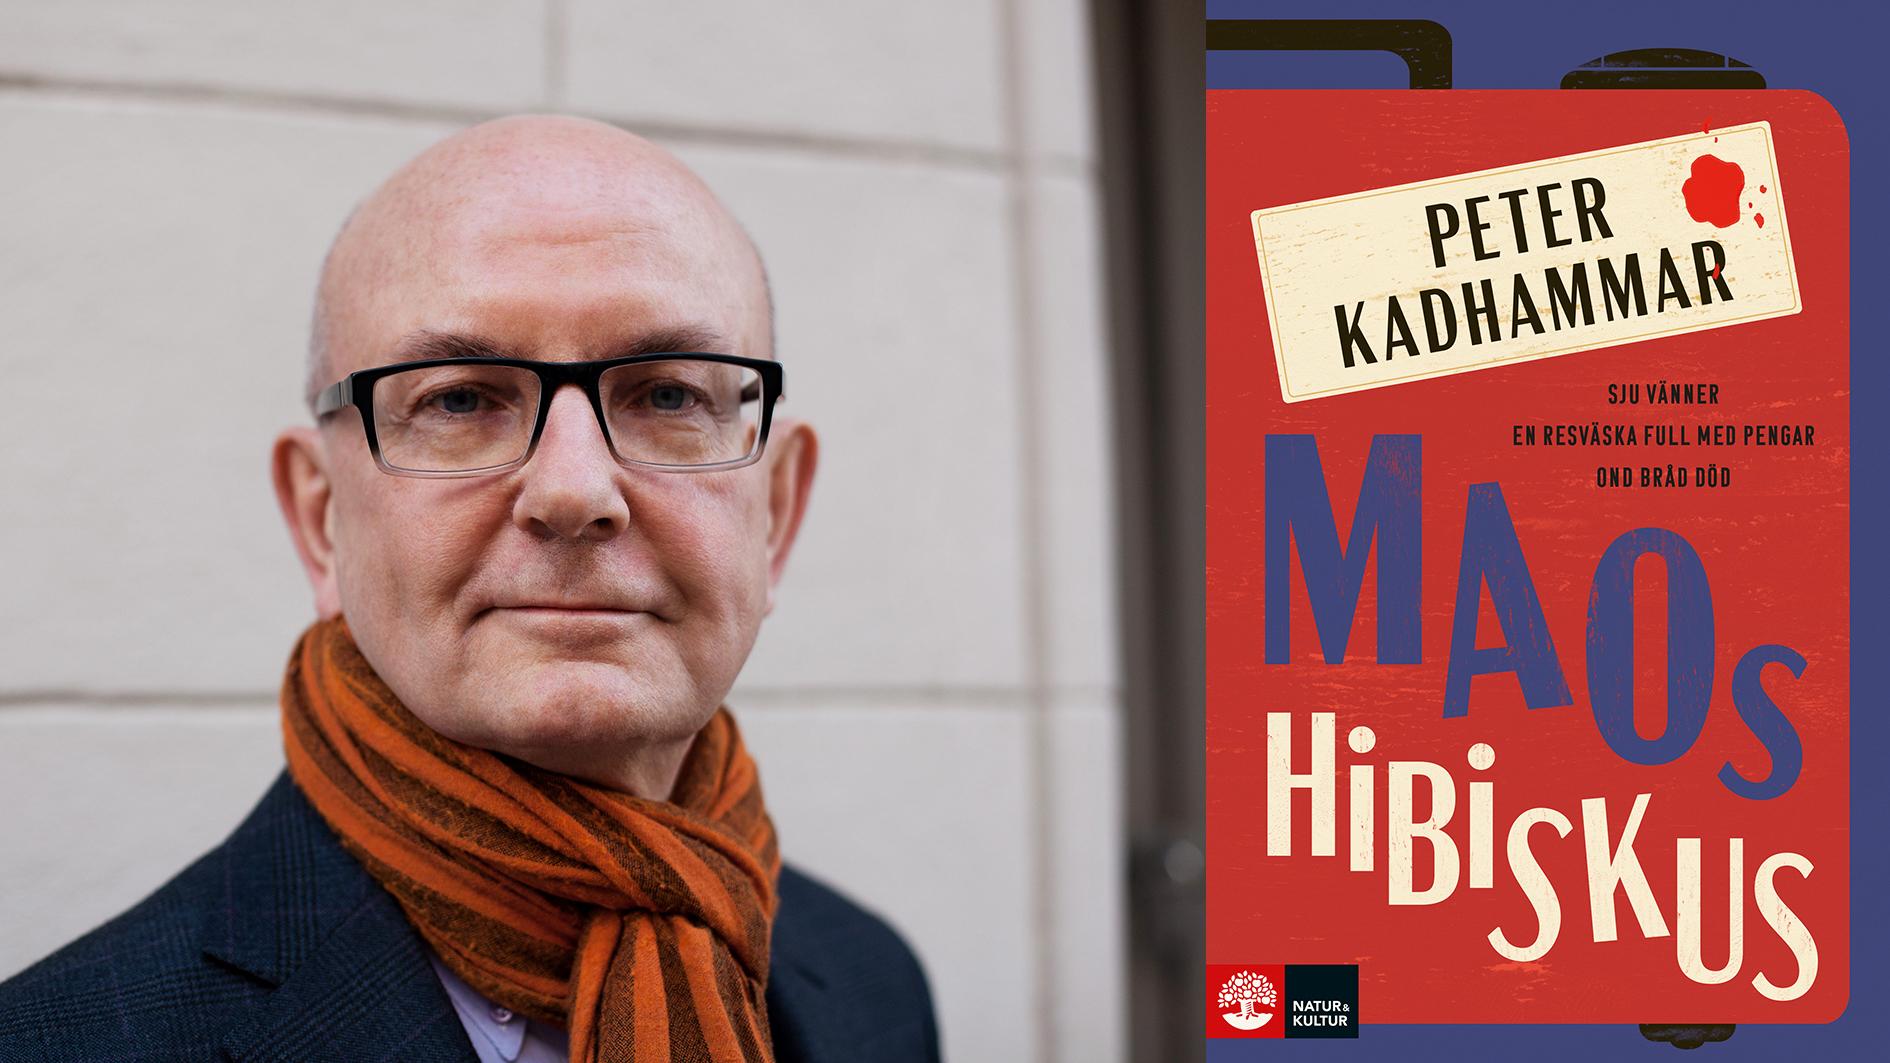 Peter Kadhammar (född 1956) är journalist på Aftonbladet, med flera reportageböcker bakom sig. Nu debuterar han som romanförfattare med ”Maos hibiskus”.